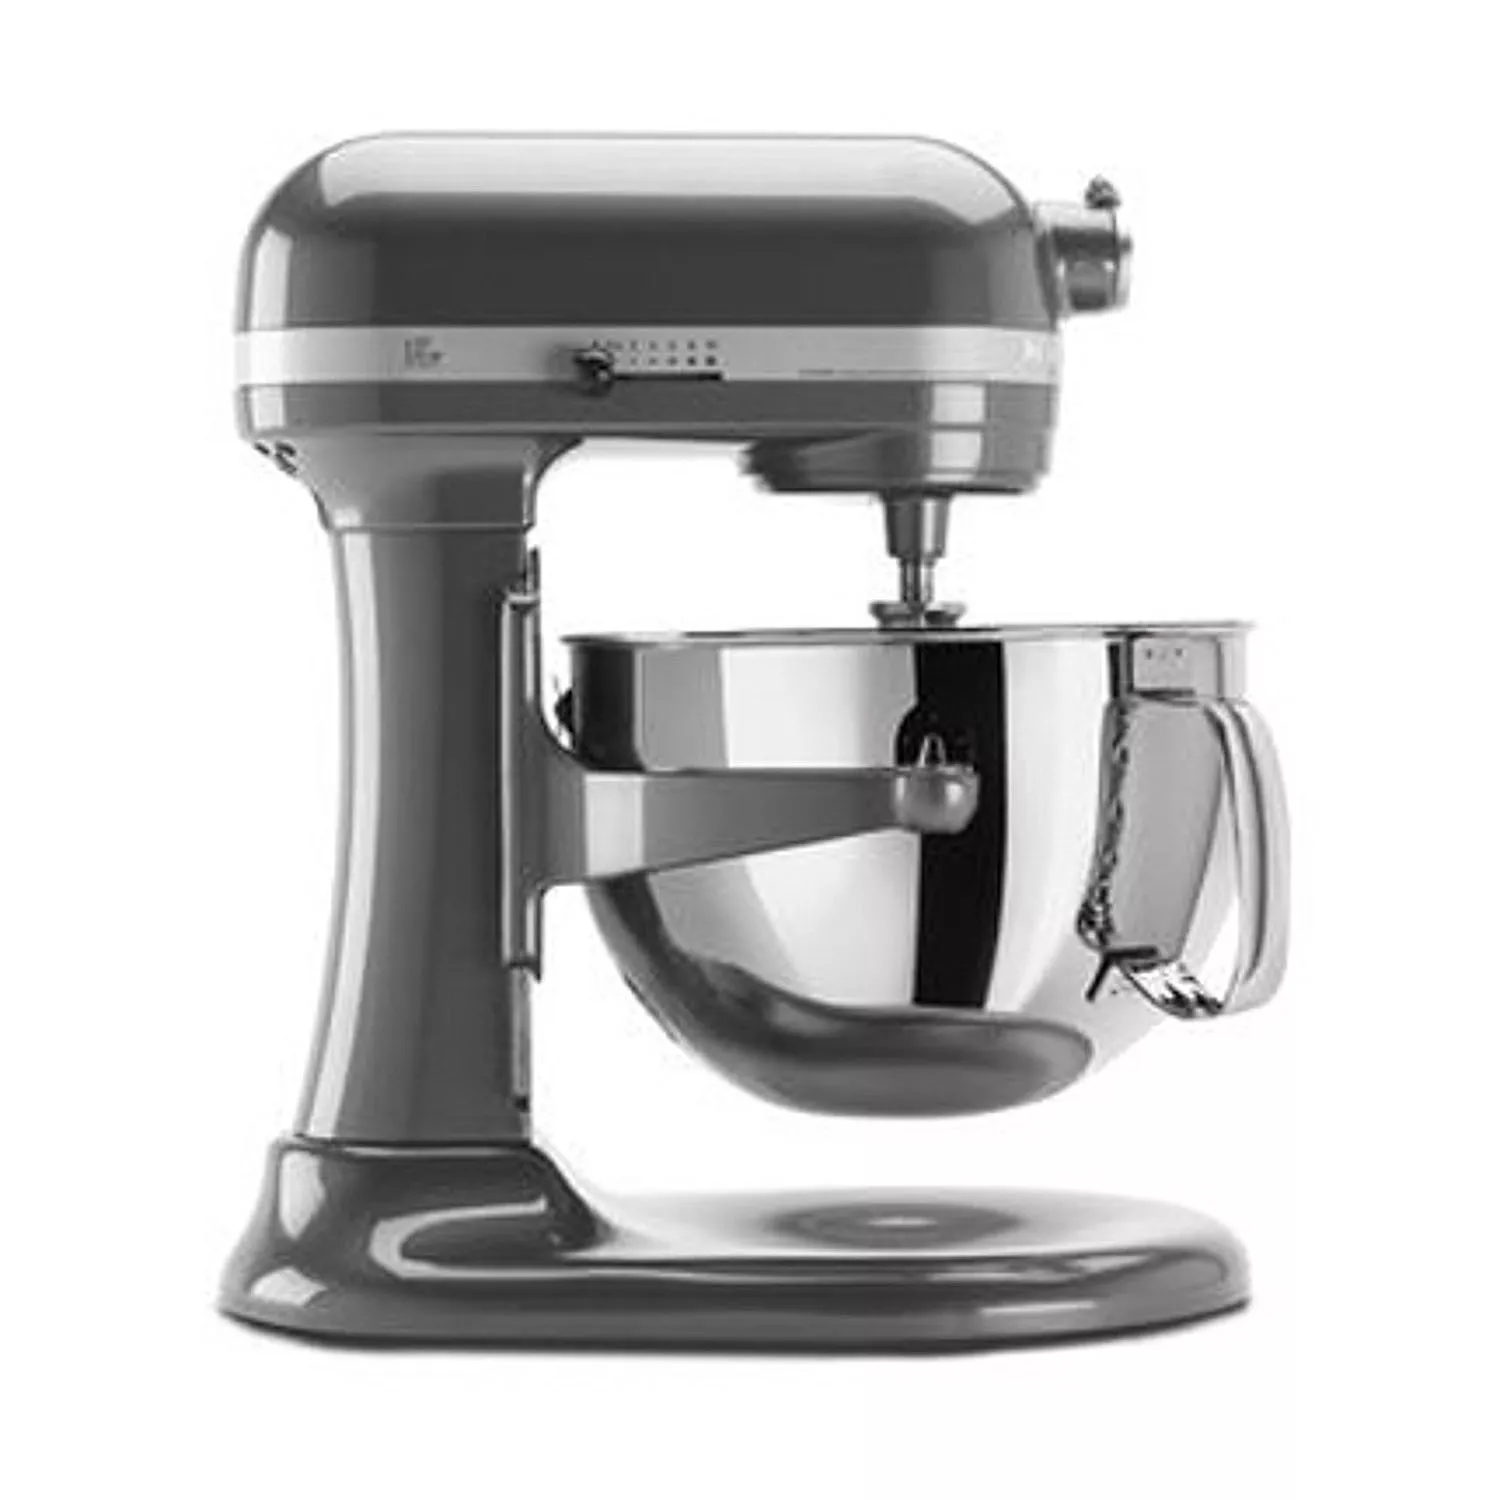 KitchenAid Pro 600 Mixer 6qt 575W - appliances - by owner - sale